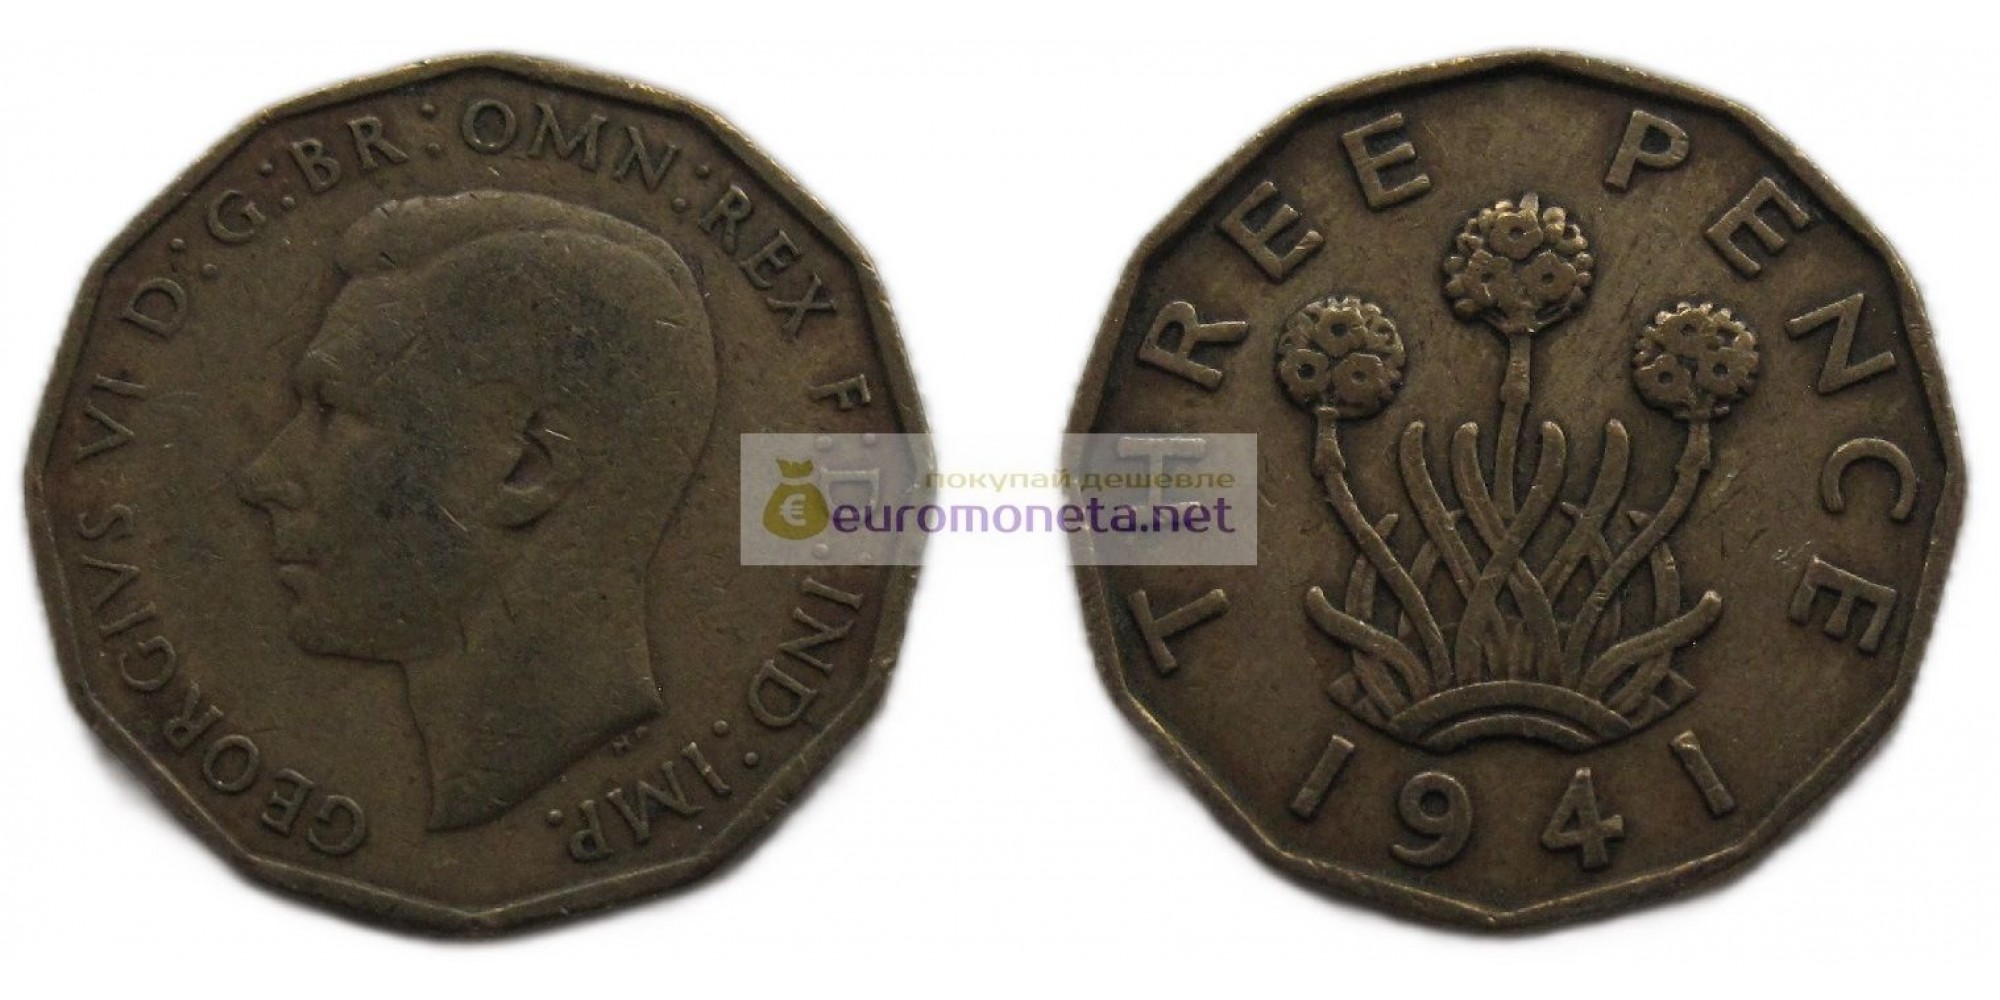 Великобритания 3 пенса 1941 год Никелевая латунь (жёлтый цвет). Король Георг VI